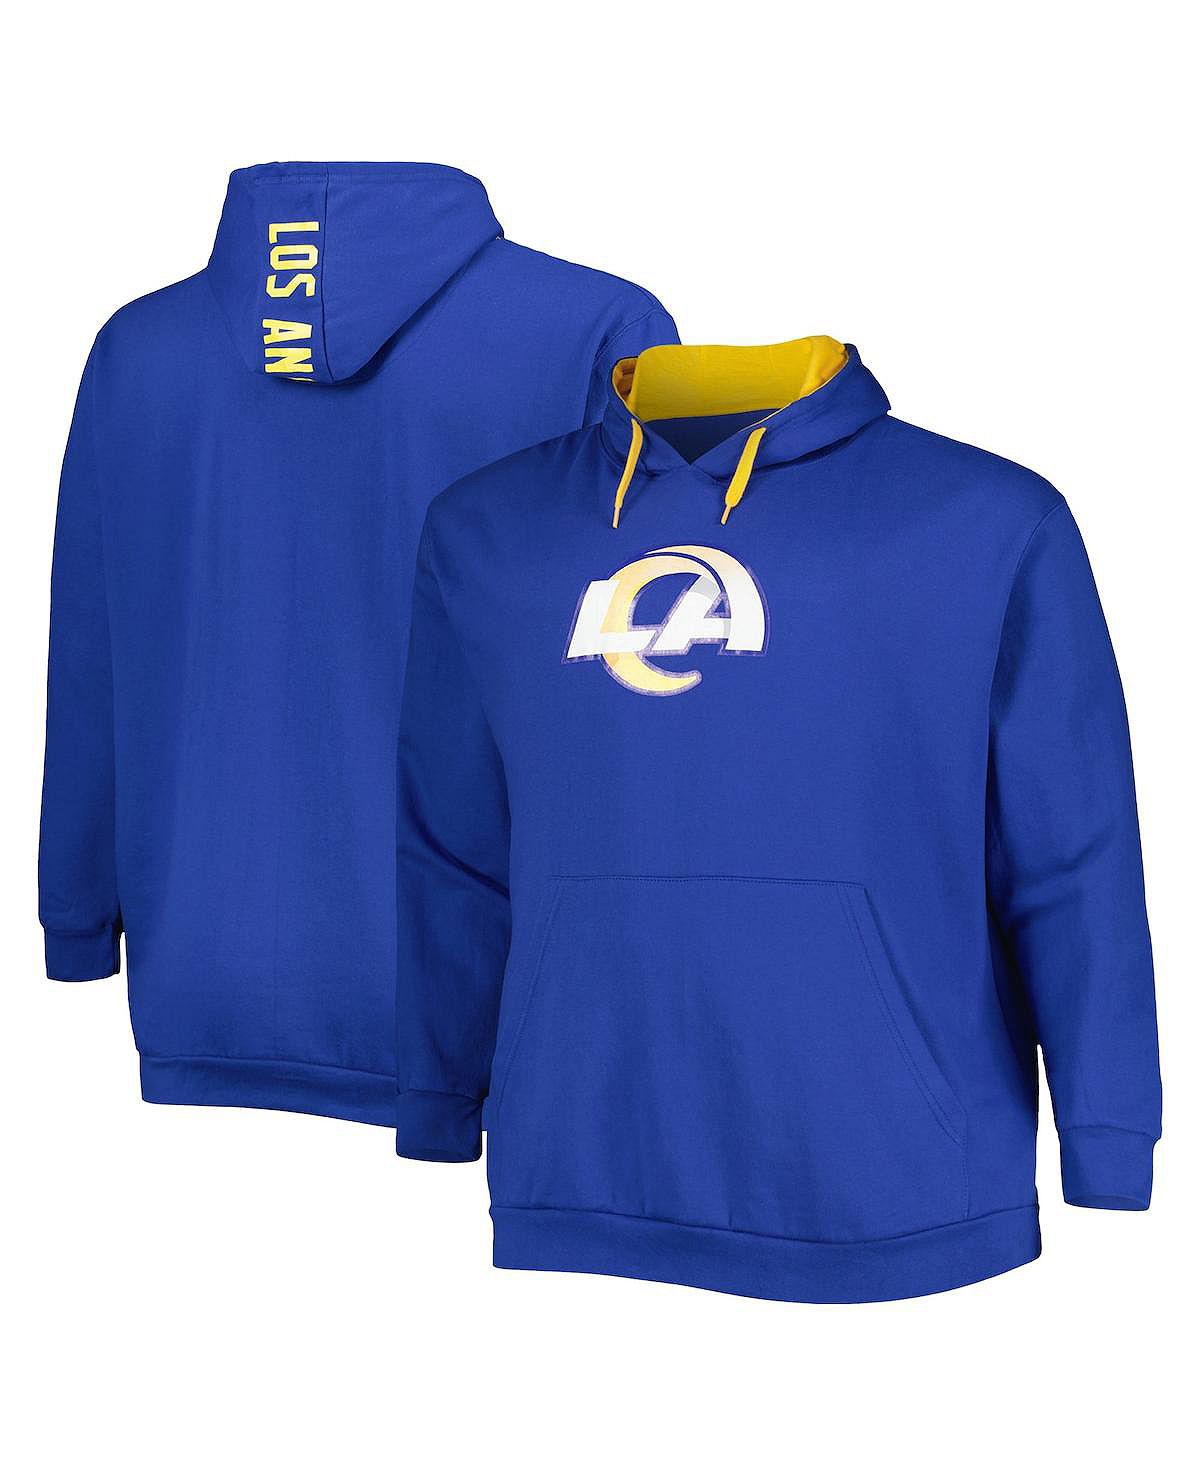 Мужской пуловер с капюшоном и логотипом Royal Los Angeles Rams Big and Tall Profile свитшот most los angeles средней длины размер 104 синий